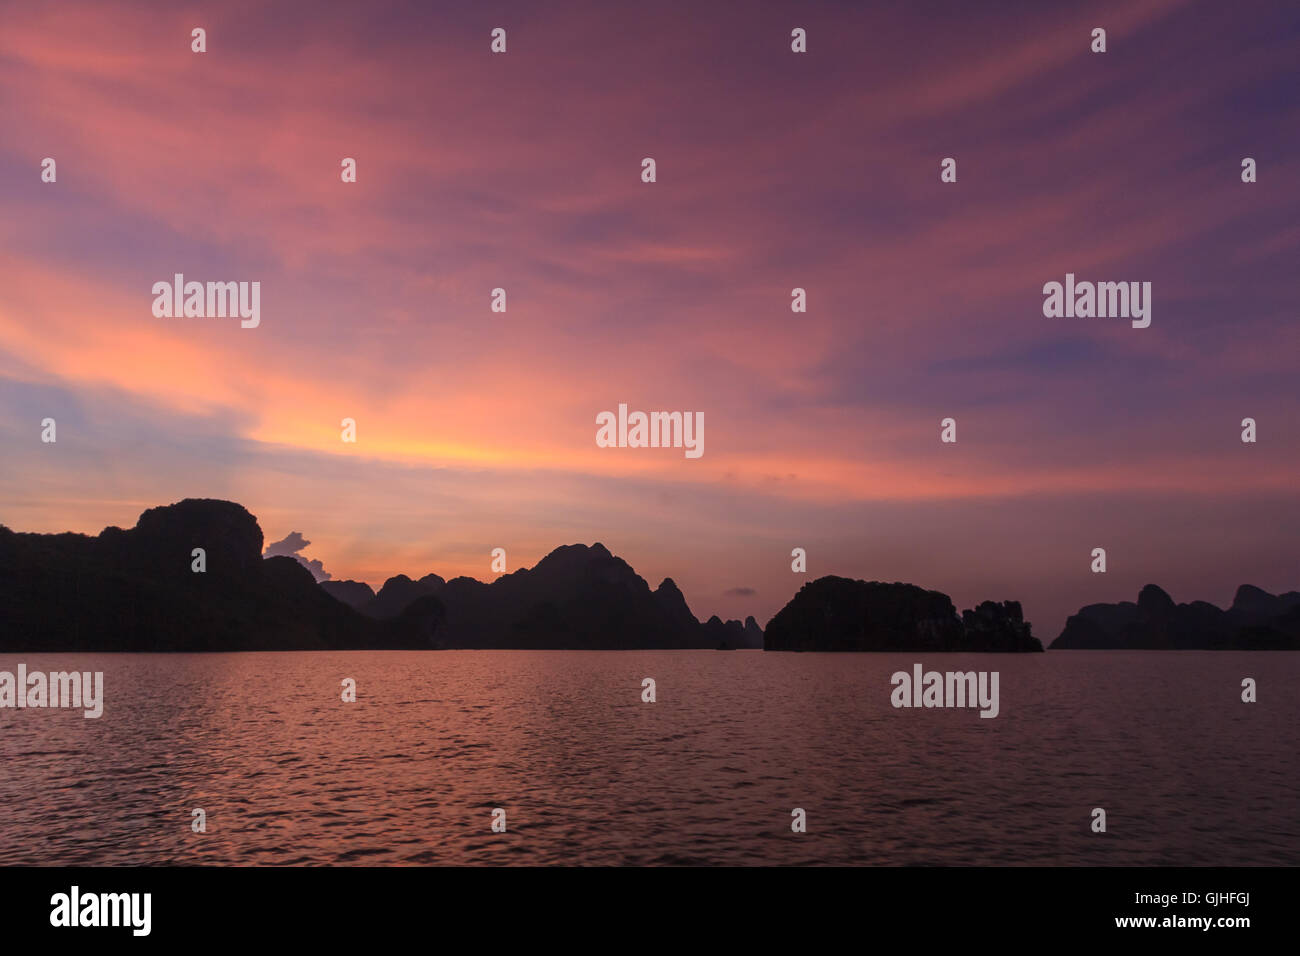 Silhouette di pietre calcaree carsiche al tramonto, la baia di Ha Long, Vietnam Foto Stock